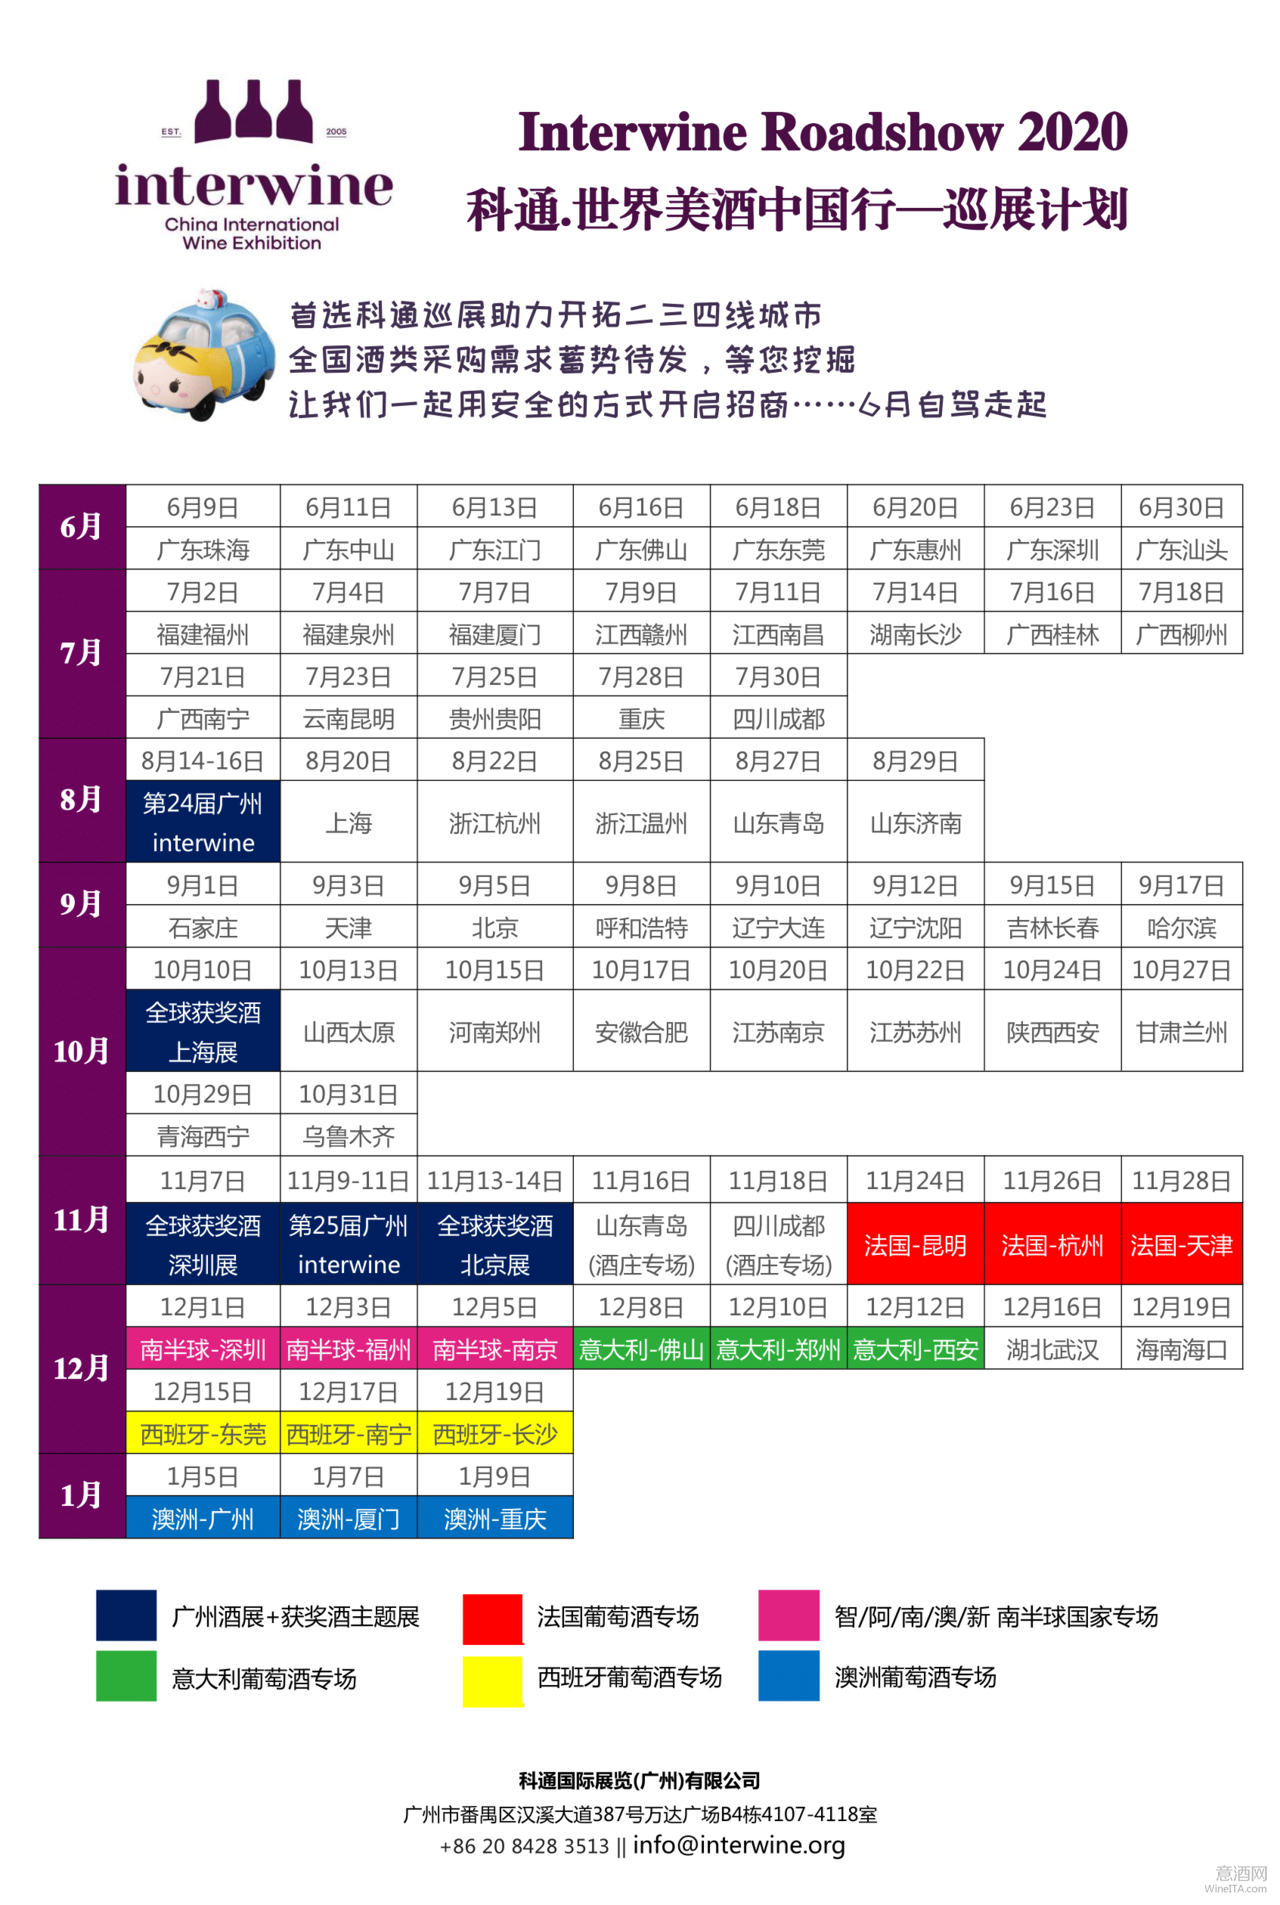 快讯 | Interwine广州国际名酒展延至8月14-16日举行 全国巡展日程也做相应调整（附详表）